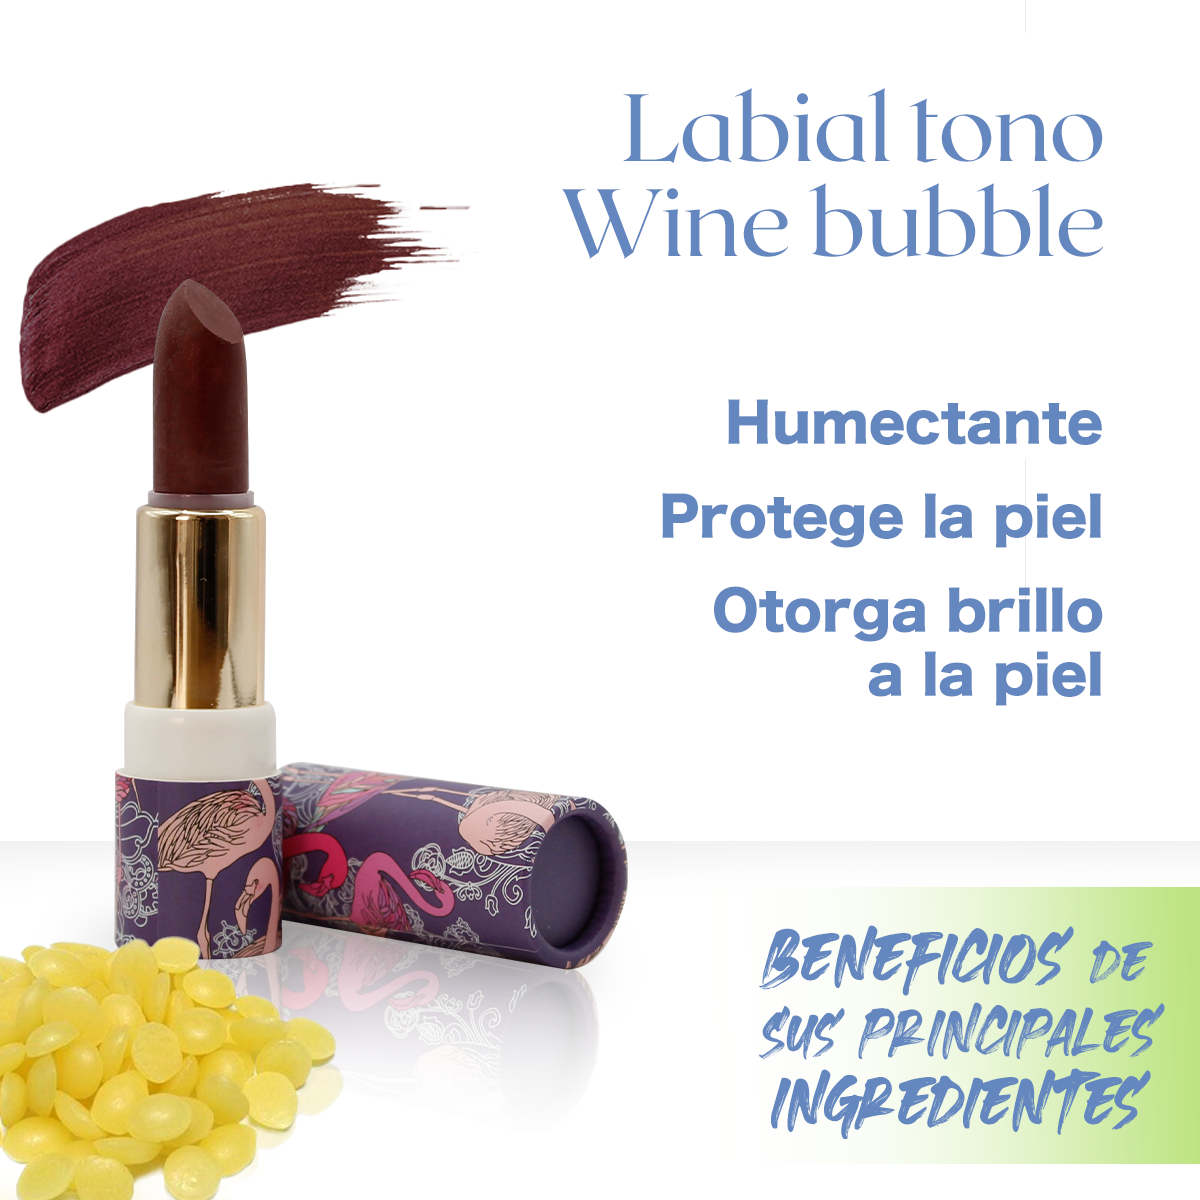 Labial hidratante natural de cera de candelilla, manteca de karite, vitamina E y pigmentos naturales, tono Wine Bubble 6g de flamenco